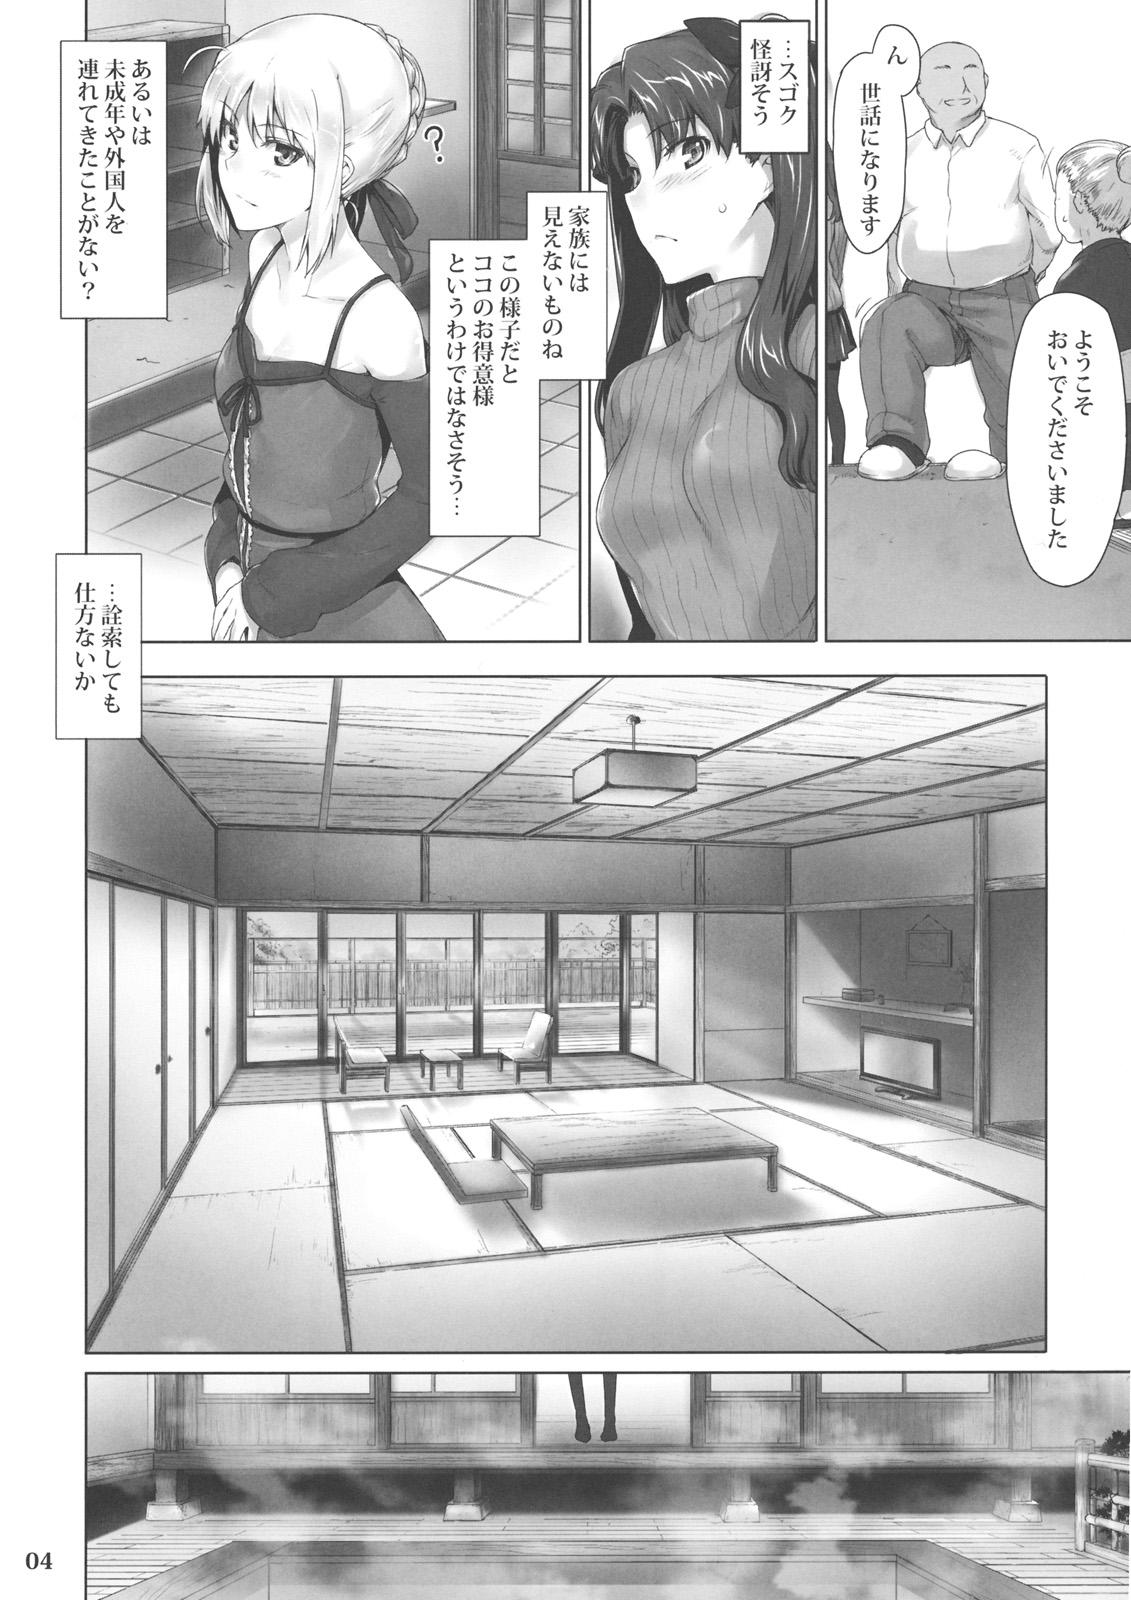 Teenfuns Tosaka-ke no Kakei Jijou 8 - Fate stay night Adolescente - Page 3